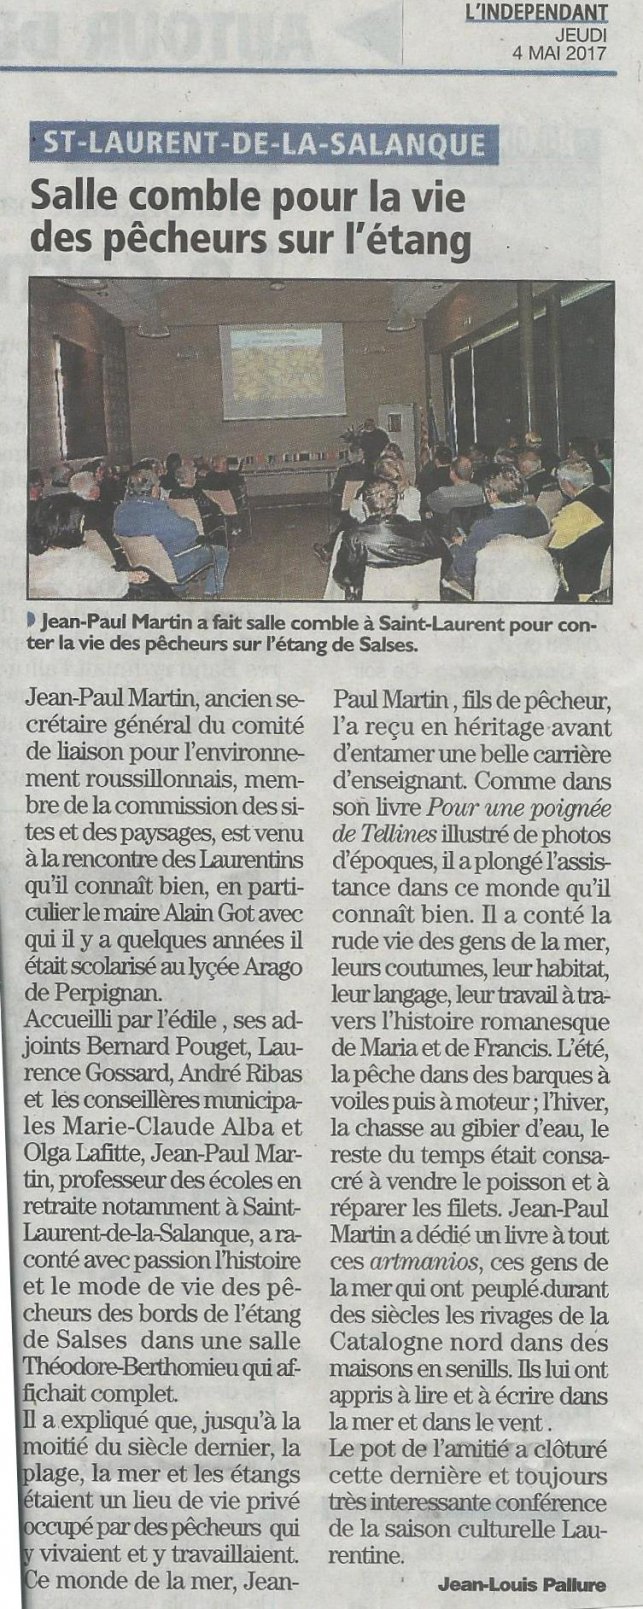 Les catalans ont suivi avec passion à St Laurent de la Salanque la vie des pêcheurs contée par Jean-Paul Martin ...